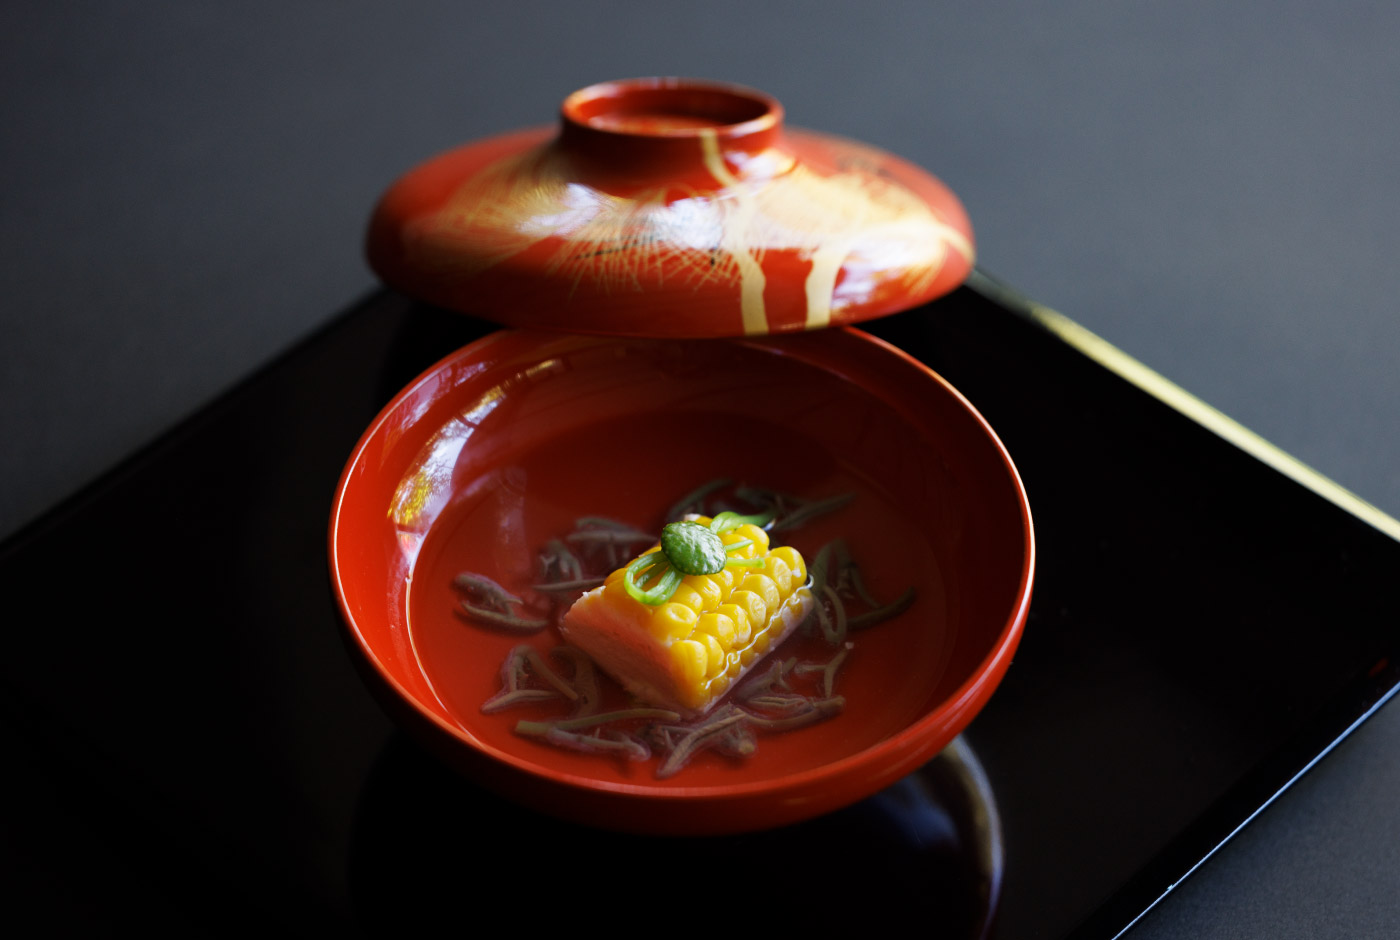 炙り玉蜀黍真薯　蓴菜　鶴菜　柚子